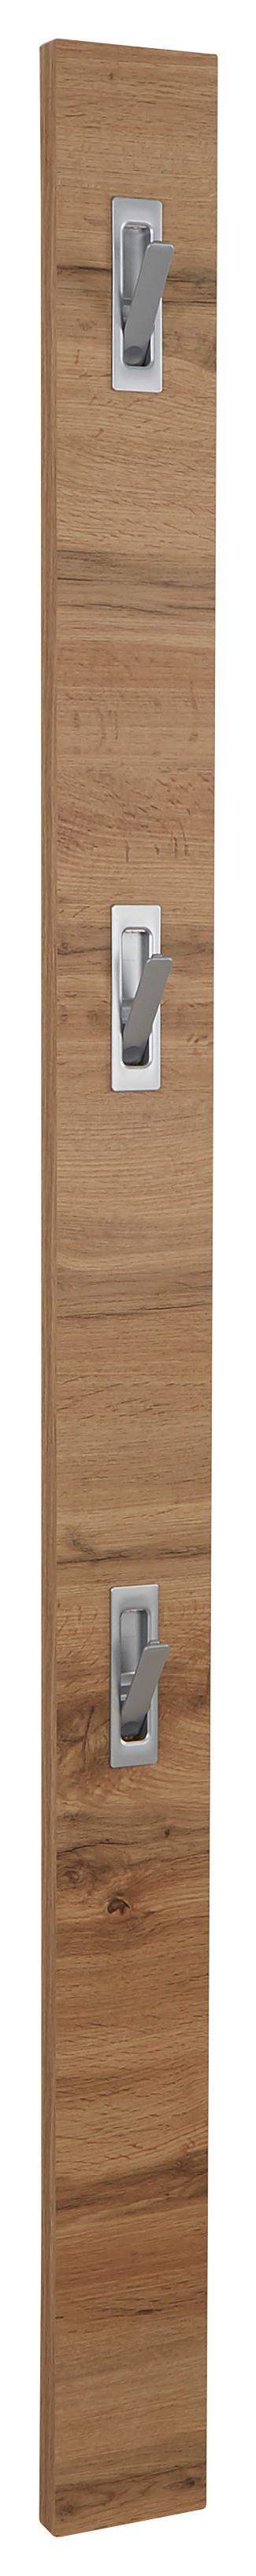 Šatní Lišta Enzo - barvy dubu, Moderní, kompozitní dřevo (12/175/2,8cm)